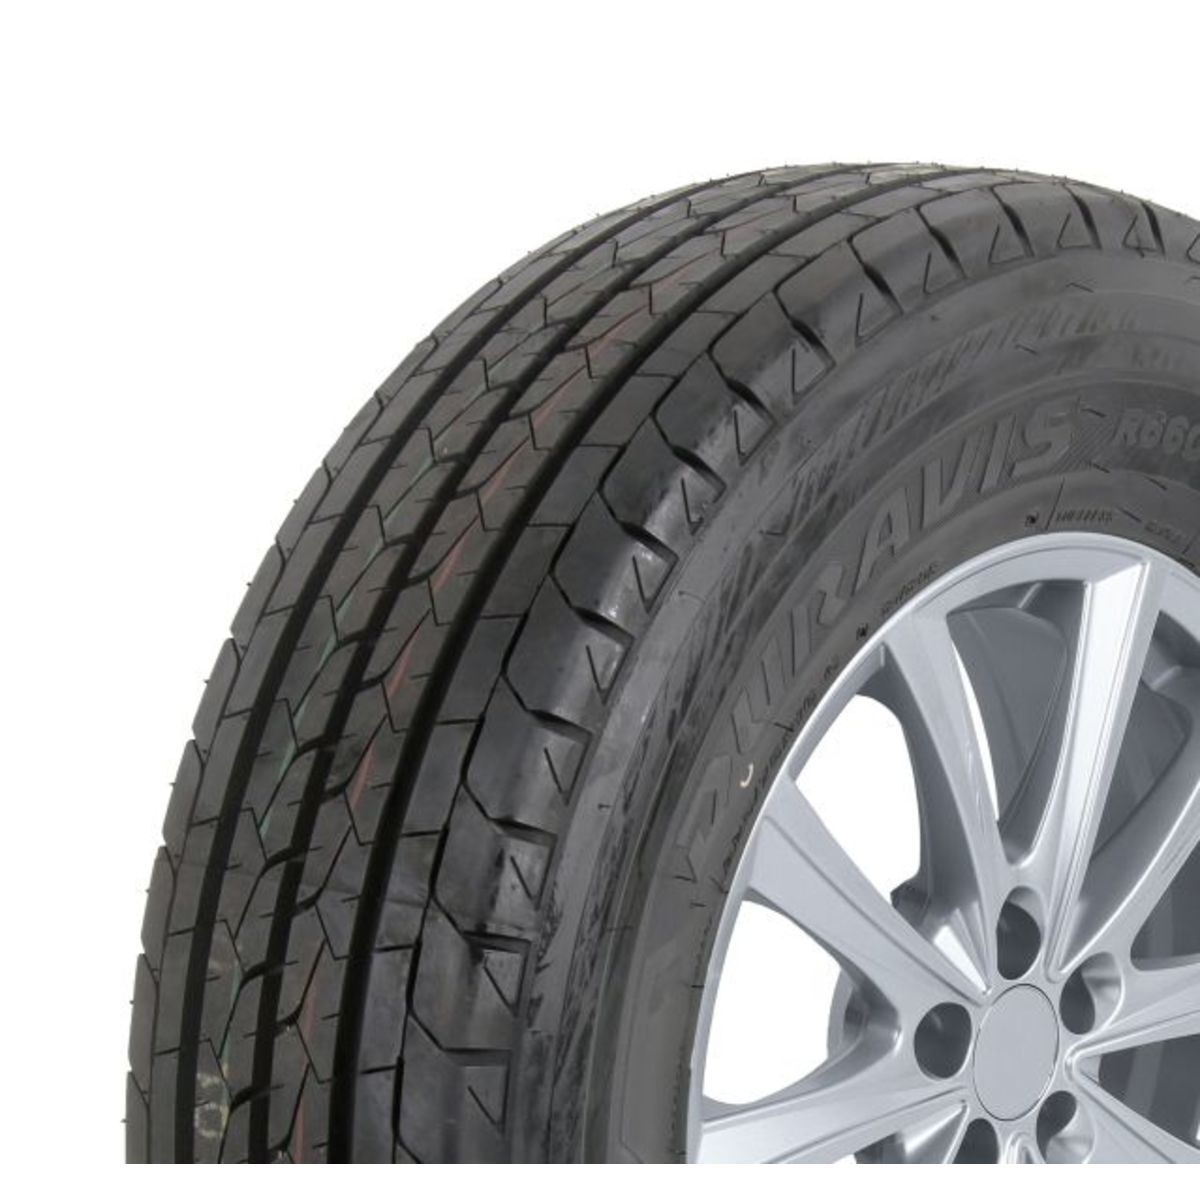 Neumáticos de verano BRIDGESTONE Duravis R660 195/80R14C, 106R TL